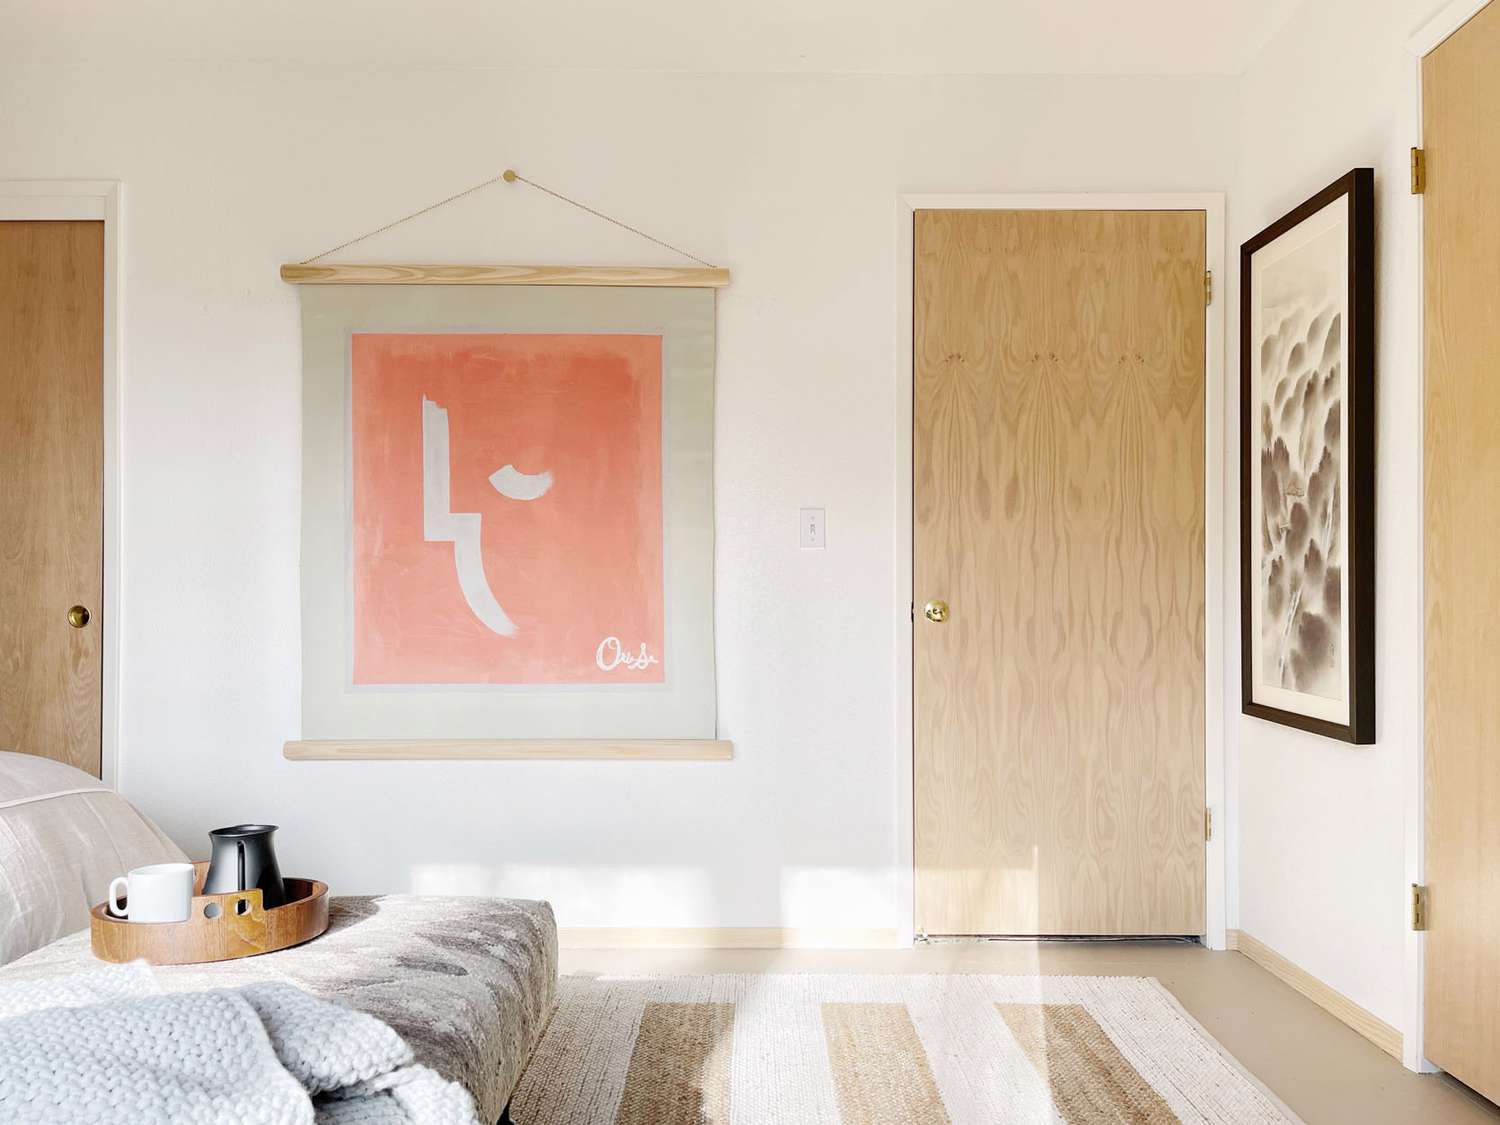 Des portes en bois clair complètent une tenture murale pêche qui recouvre une chambre à coucher de couleur crème claire